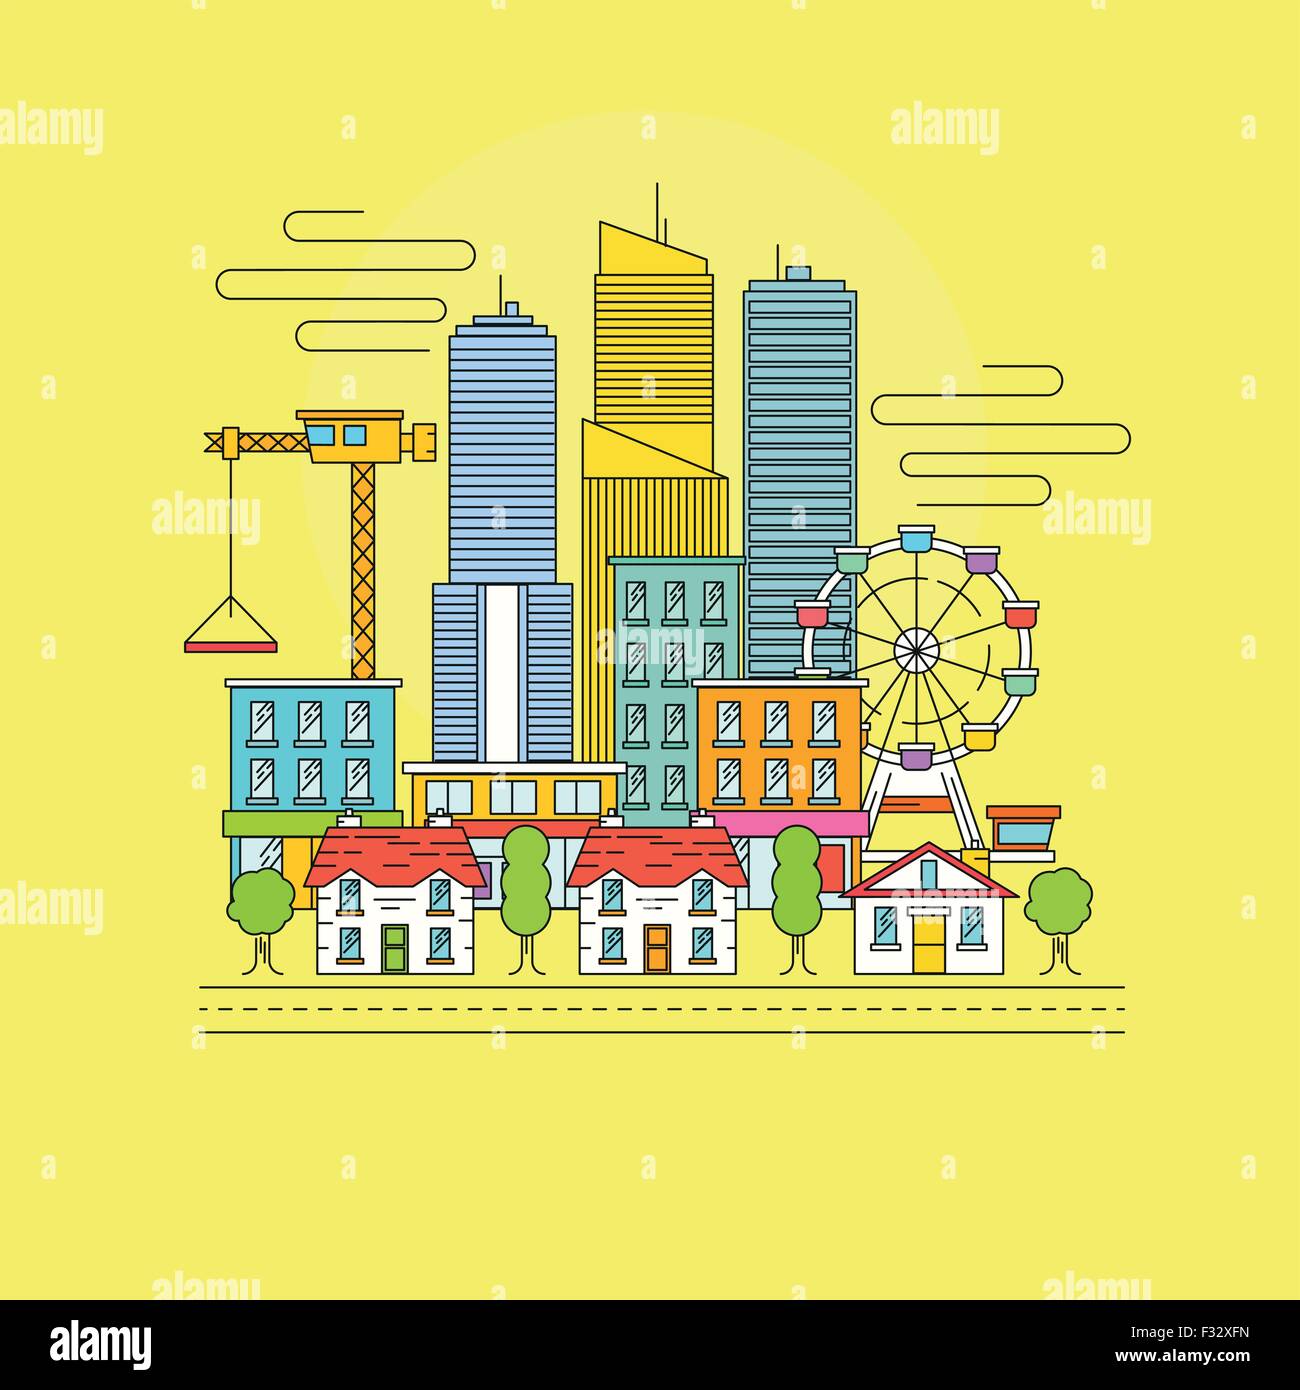 Vektor Stadtbild. Eine geschäftige Stadt-Szene mit Wolkenkratzern, Einzelhandelsgeschäfte und Stadthäuser. Vektor-illustration Stock Vektor